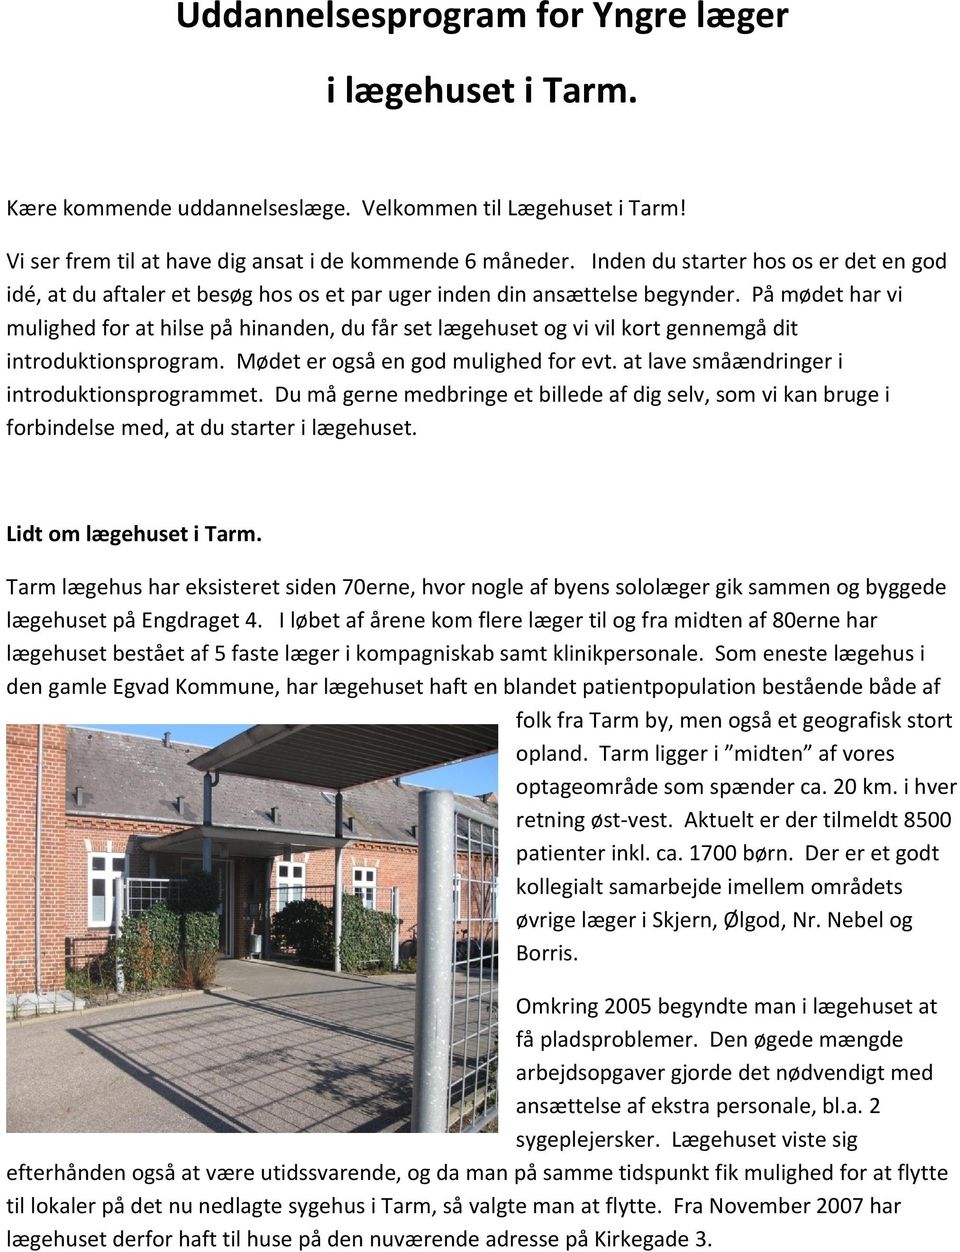 Uddannelsesprogram for Yngre læger i lægehuset i Tarm. - PDF ...